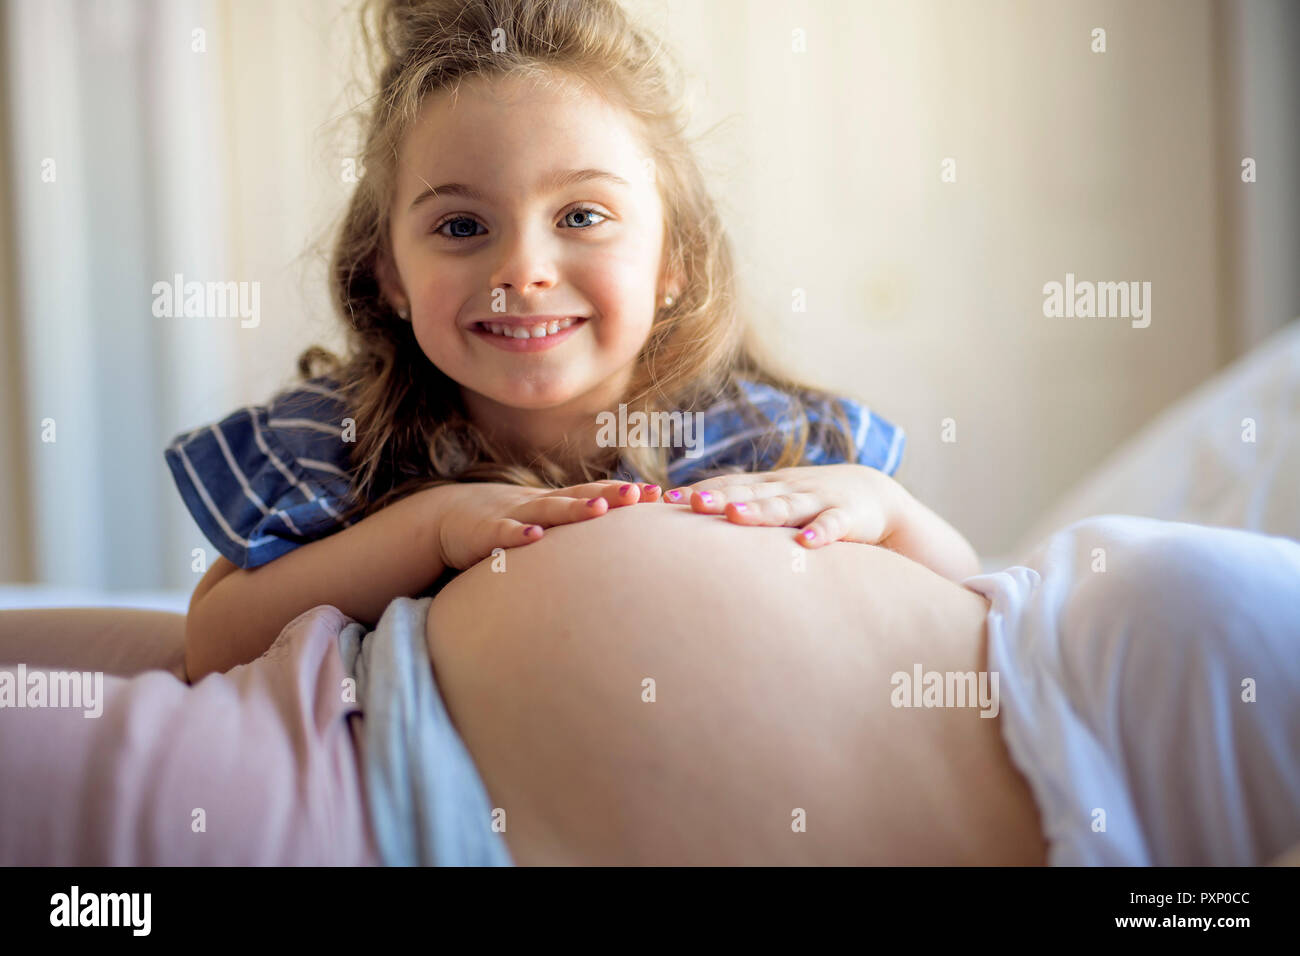 Femme enceinte avec sa fille sur l'ensemble de chambre à coucher Banque D'Images